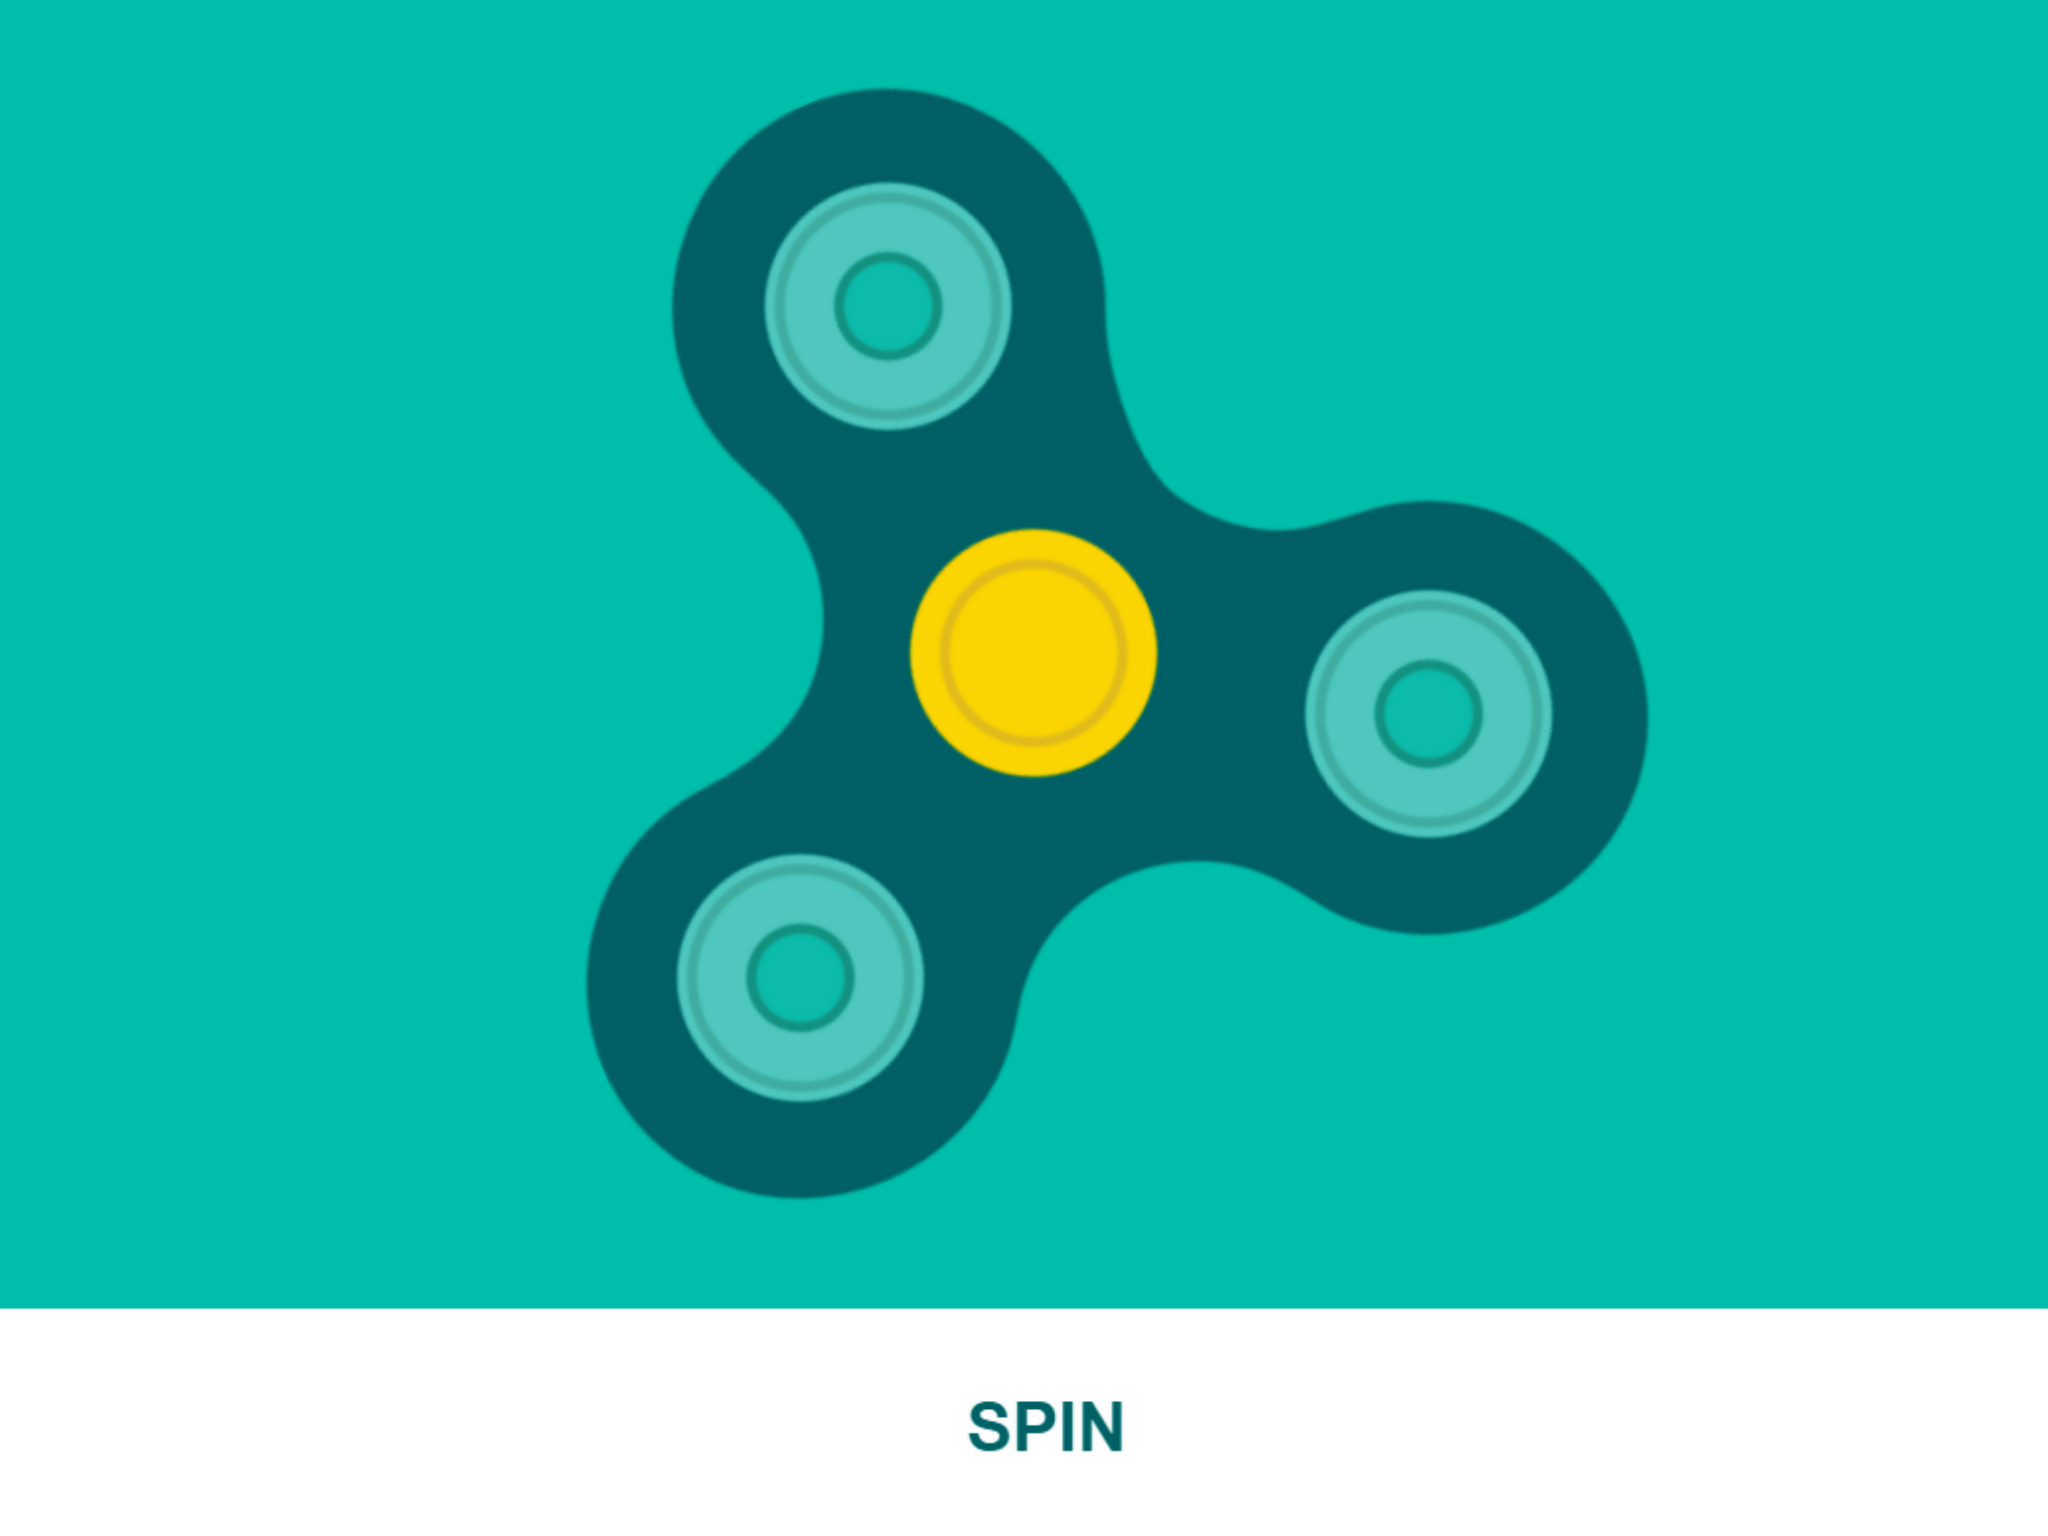 Google Branded Fidget Spinner